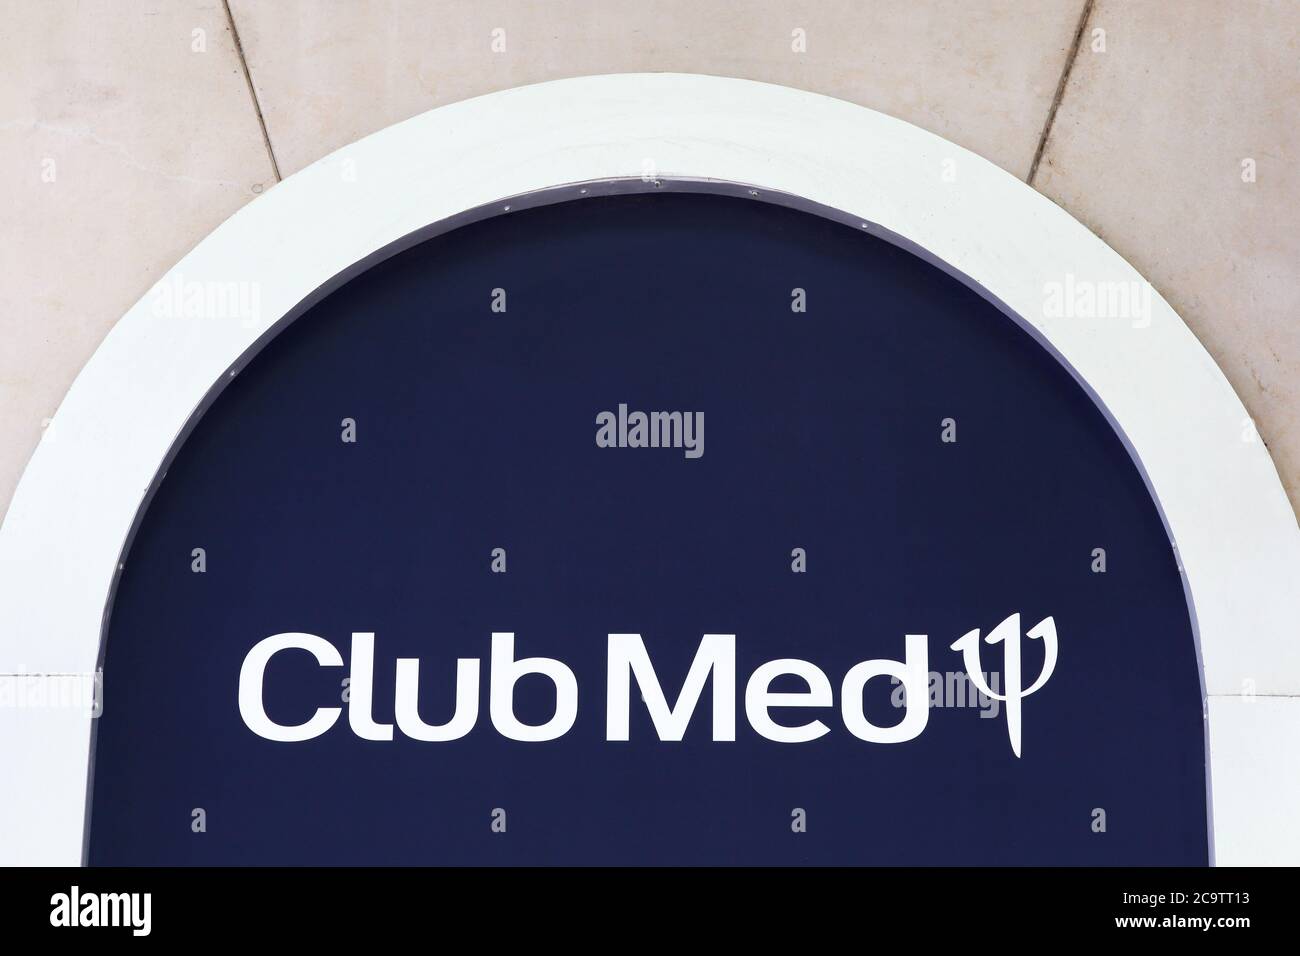 Lyon, Frankreich - 28. Juni 2020: Club med Logo an der Wand. Club Med und früher als Club Méditerranée bekannt ist ein chinesisches Unternehmen Stockfoto